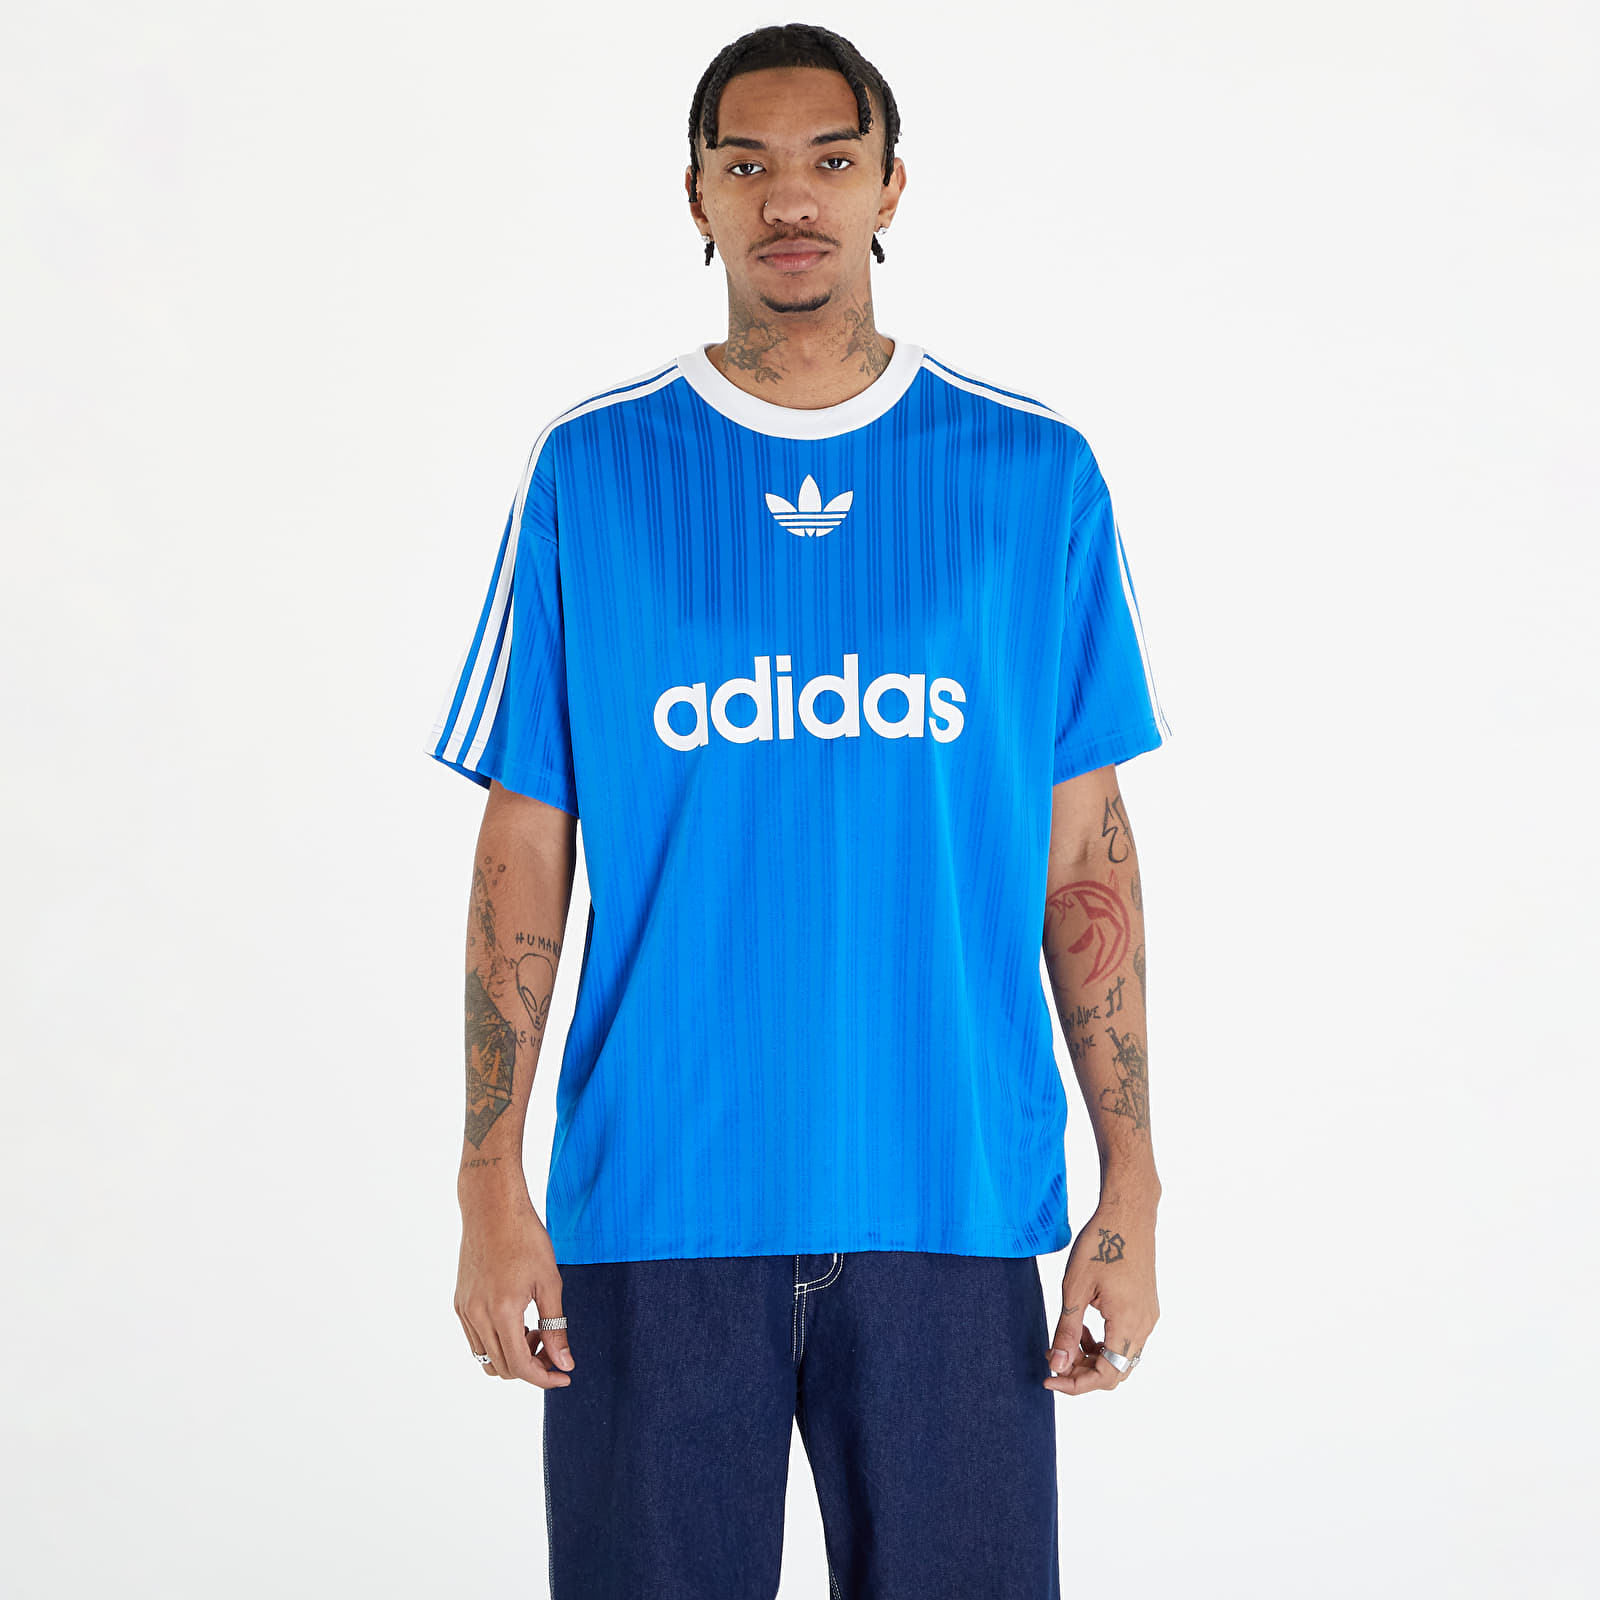 Adidas - Blue Top for Men at Footshop GOOFASH